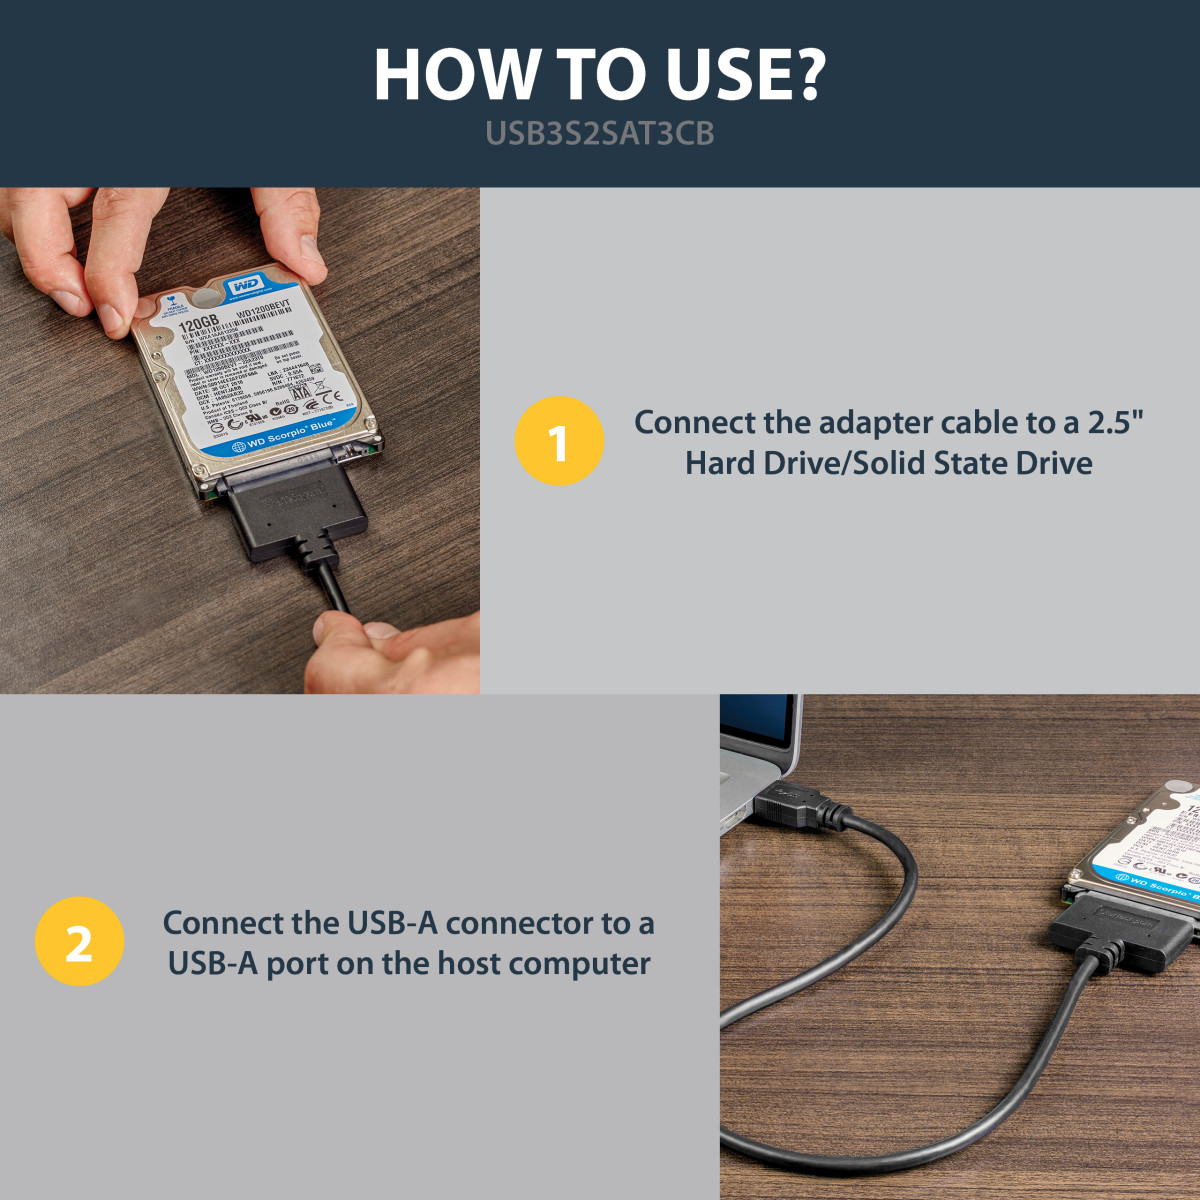 USB 3.0 -2.5 SATA III HD Adpt Cable